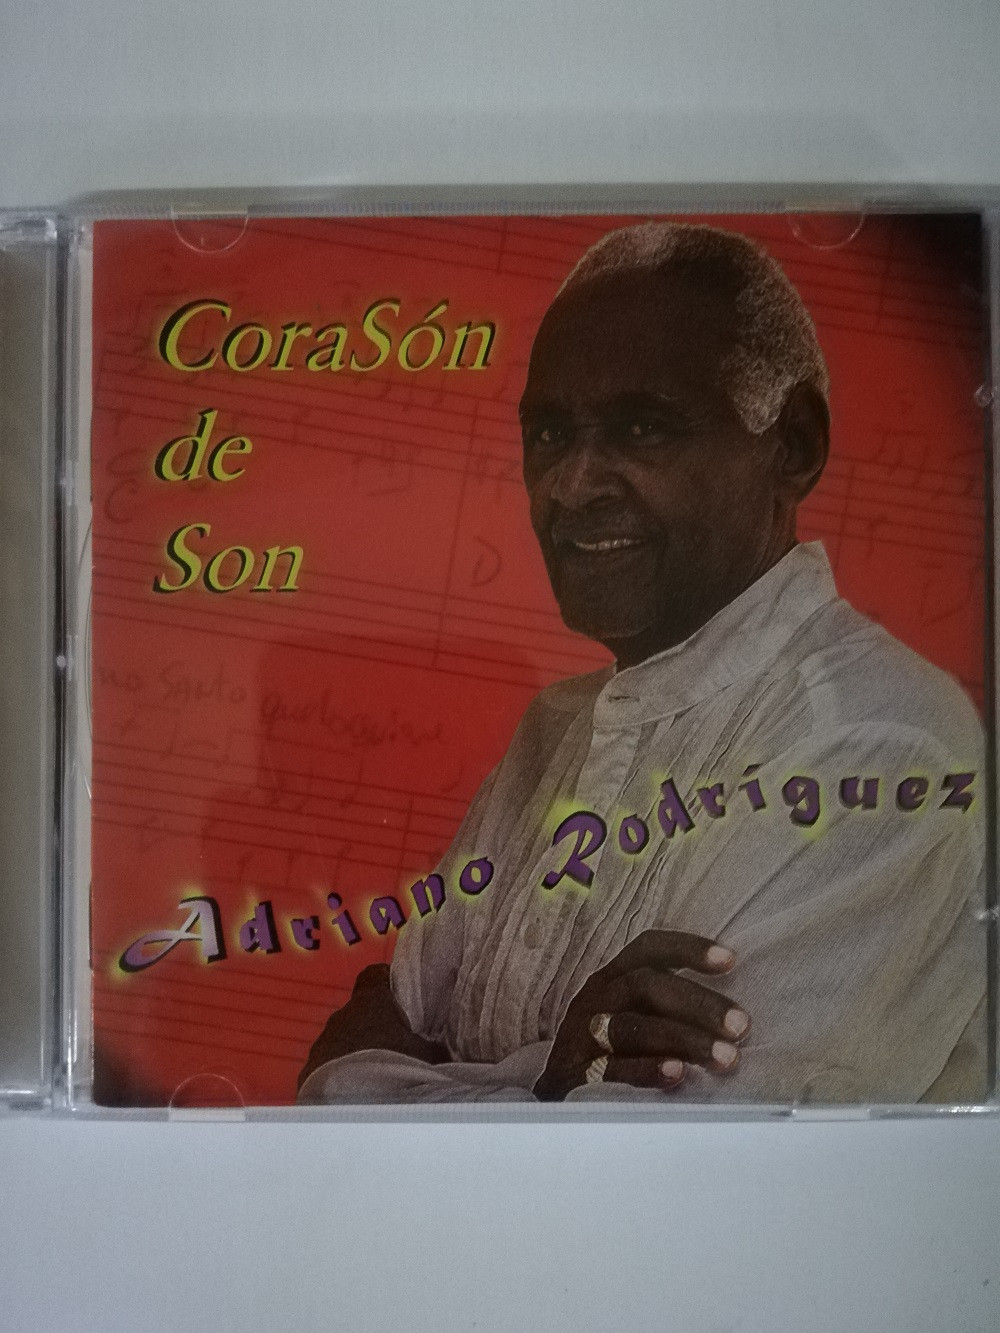 Imagen CD ADRIANO RODRIGUEZ - CORAZÓN DE SON